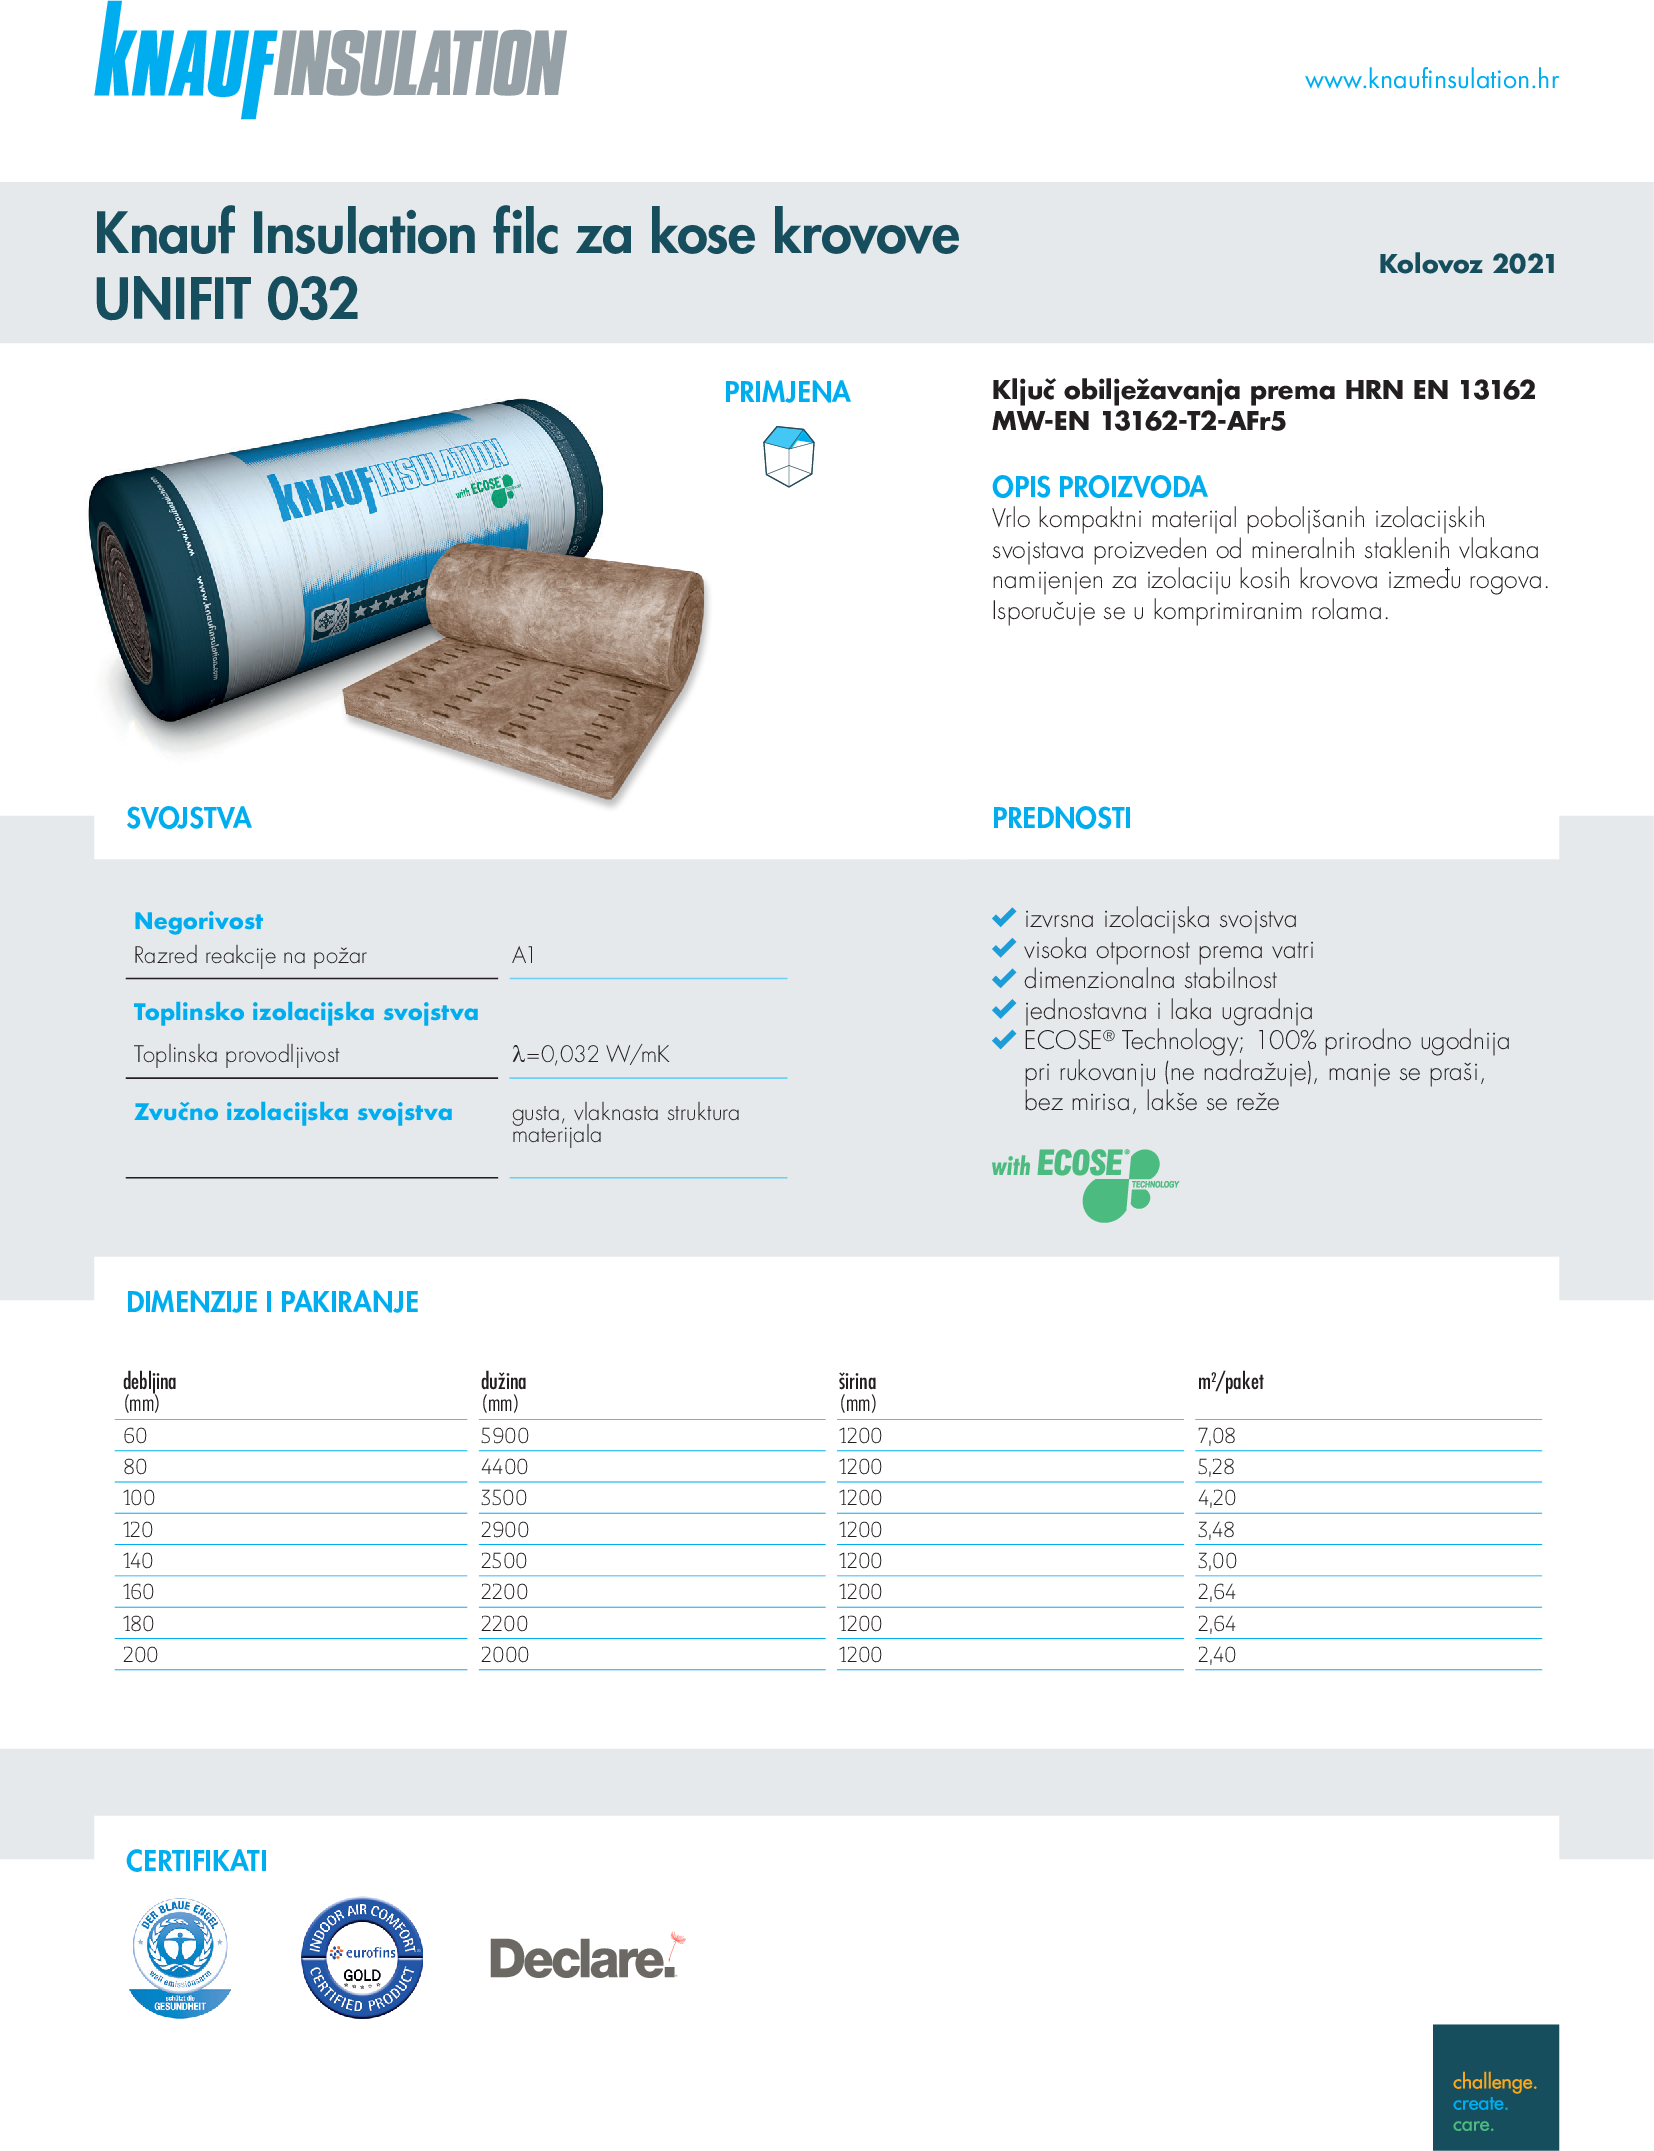 Knauf Insulation filc za kose krovove UNIFIT 032